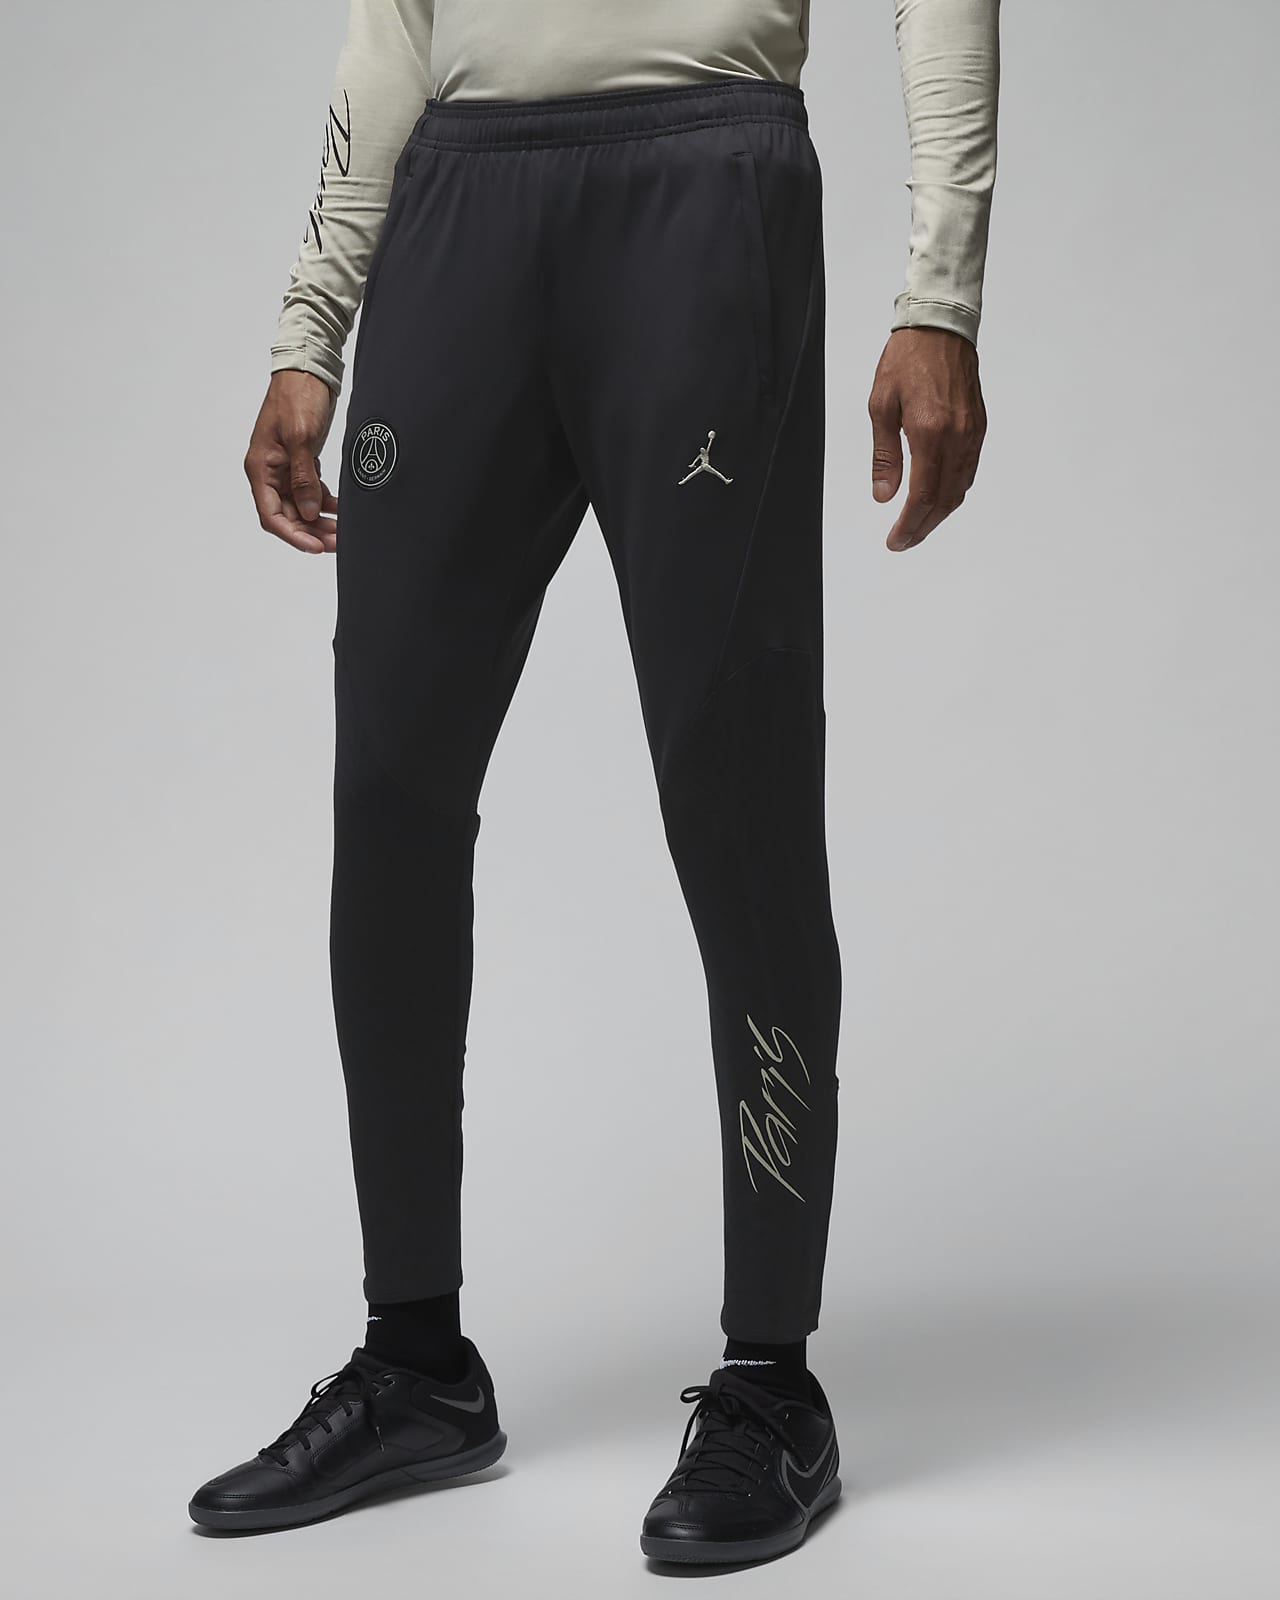 Ανδρικό πλεκτό ποδοσφαιρικό παντελόνι Jordan Dri-FIT εναλλακτικής εμφάνισης Παρί Σεν Ζερμέν Strike